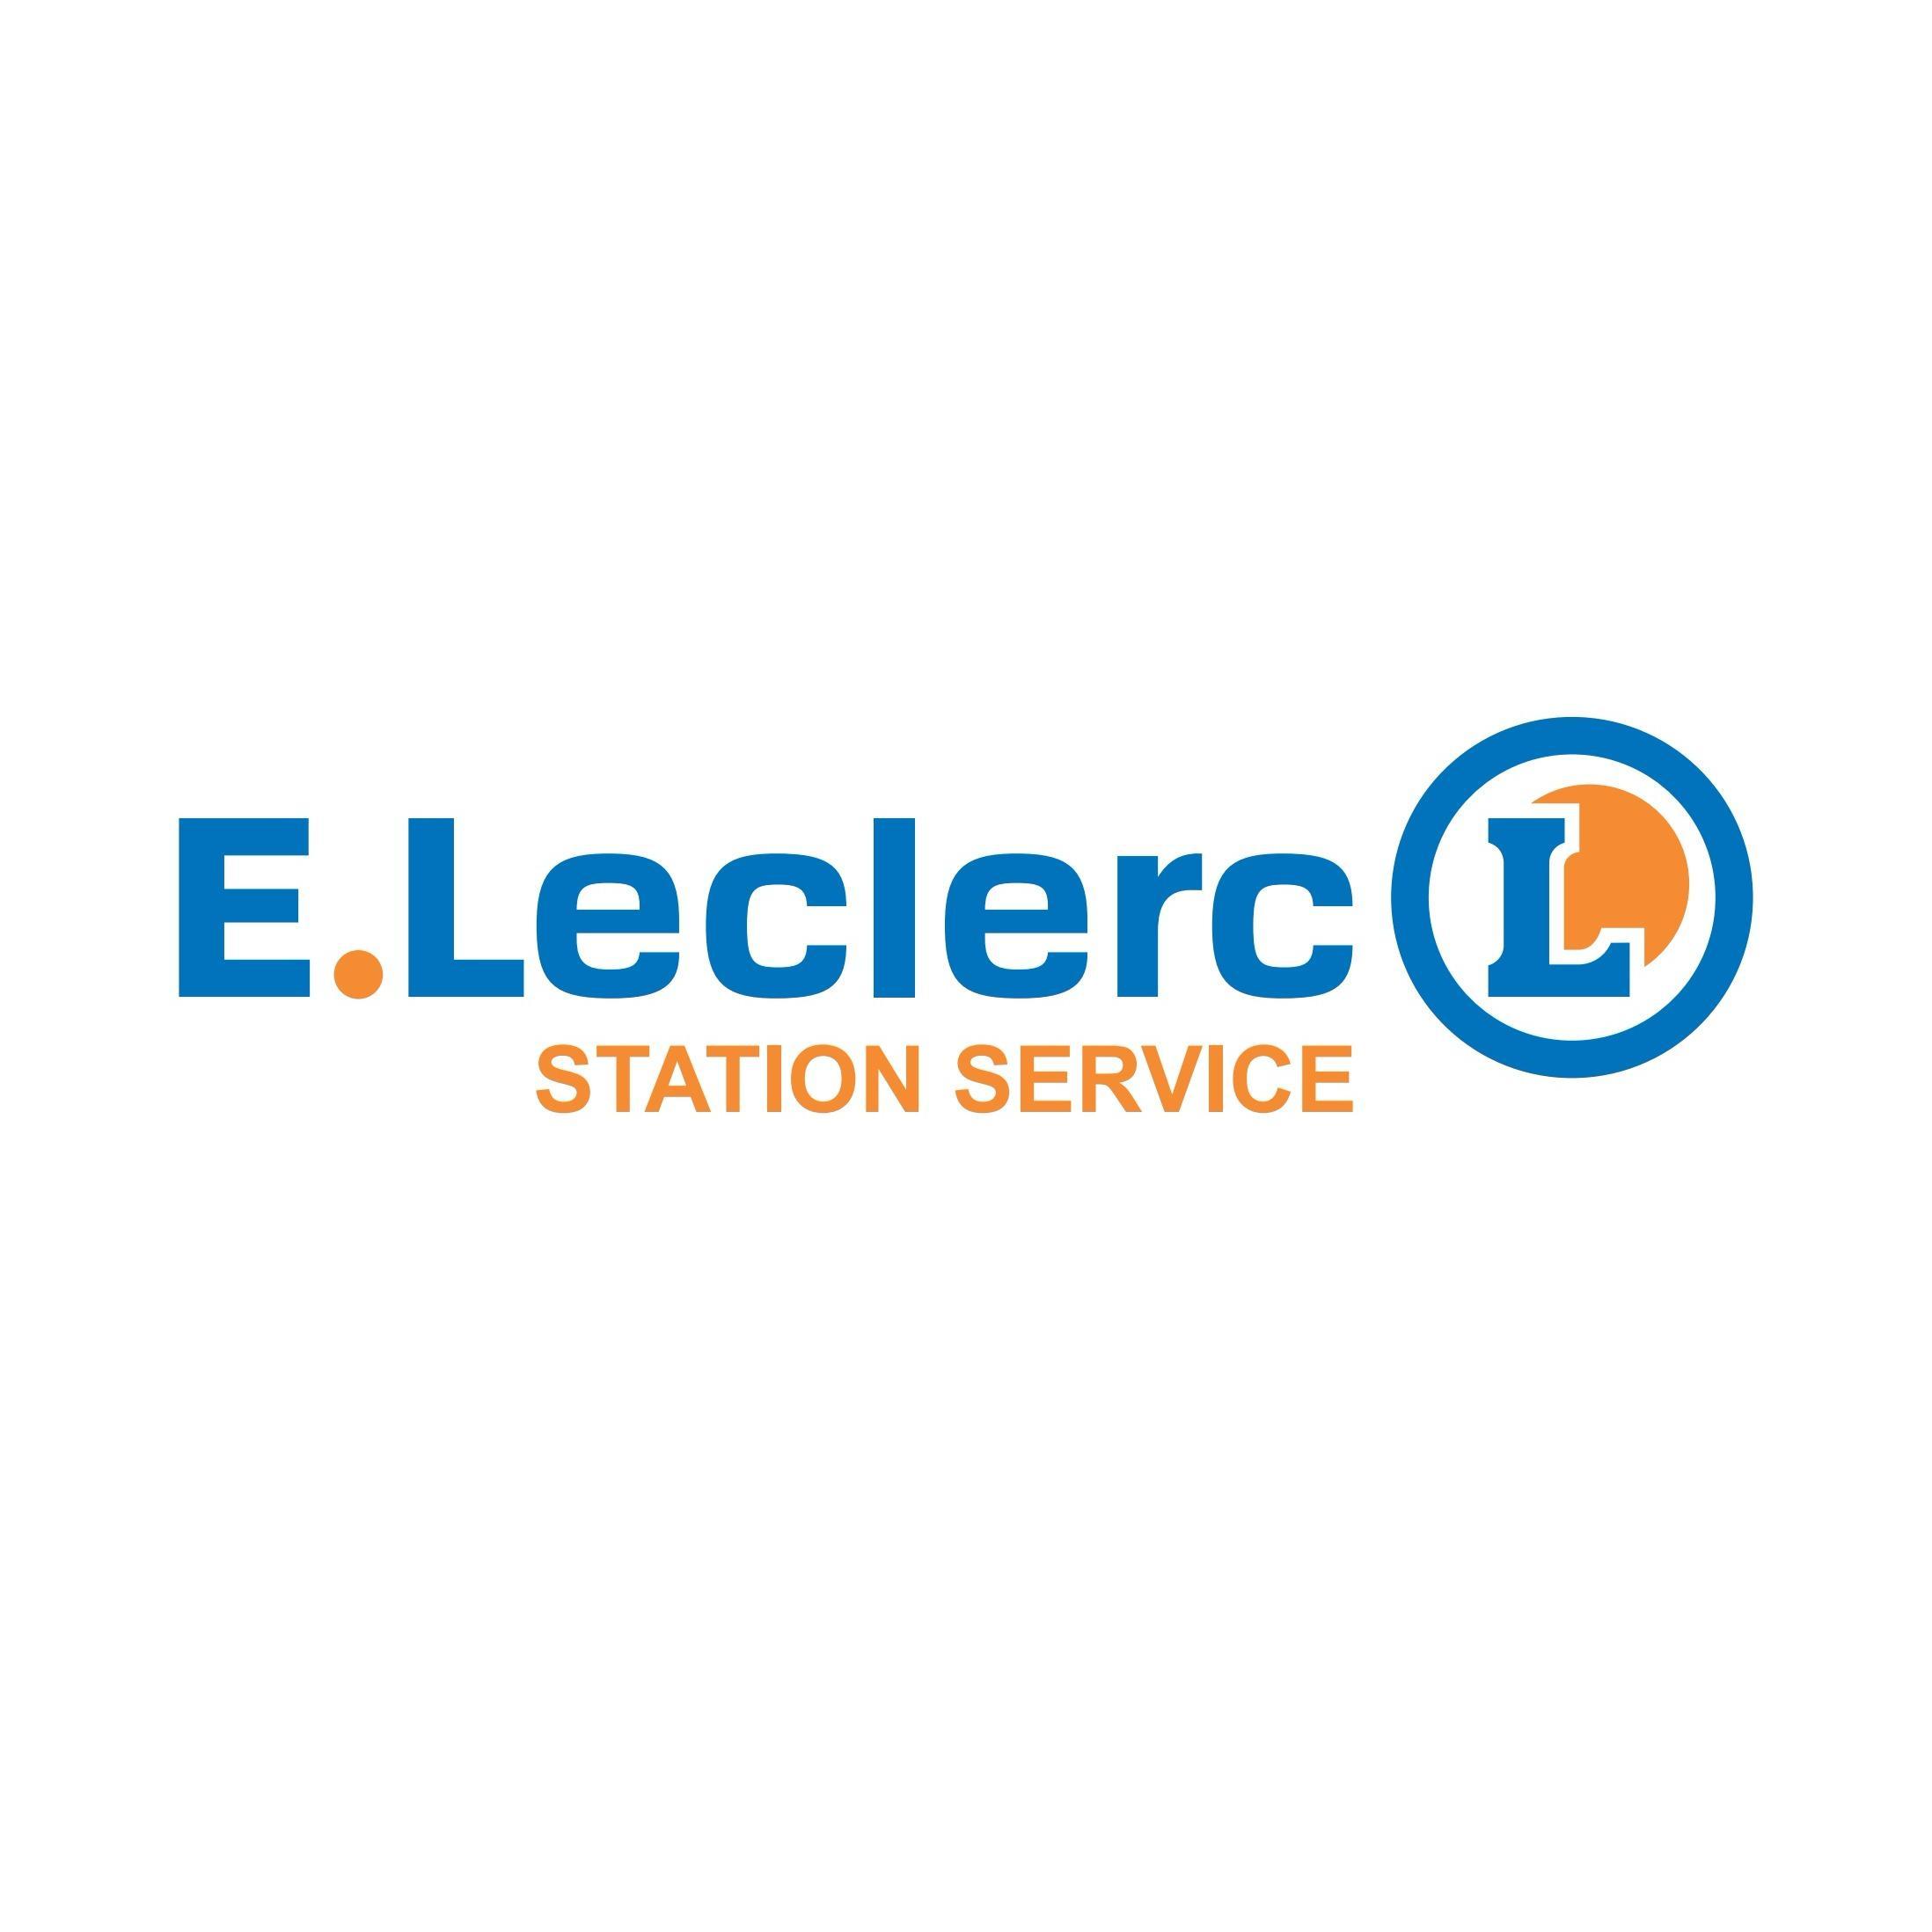 E.leclerc Station Service Chambly